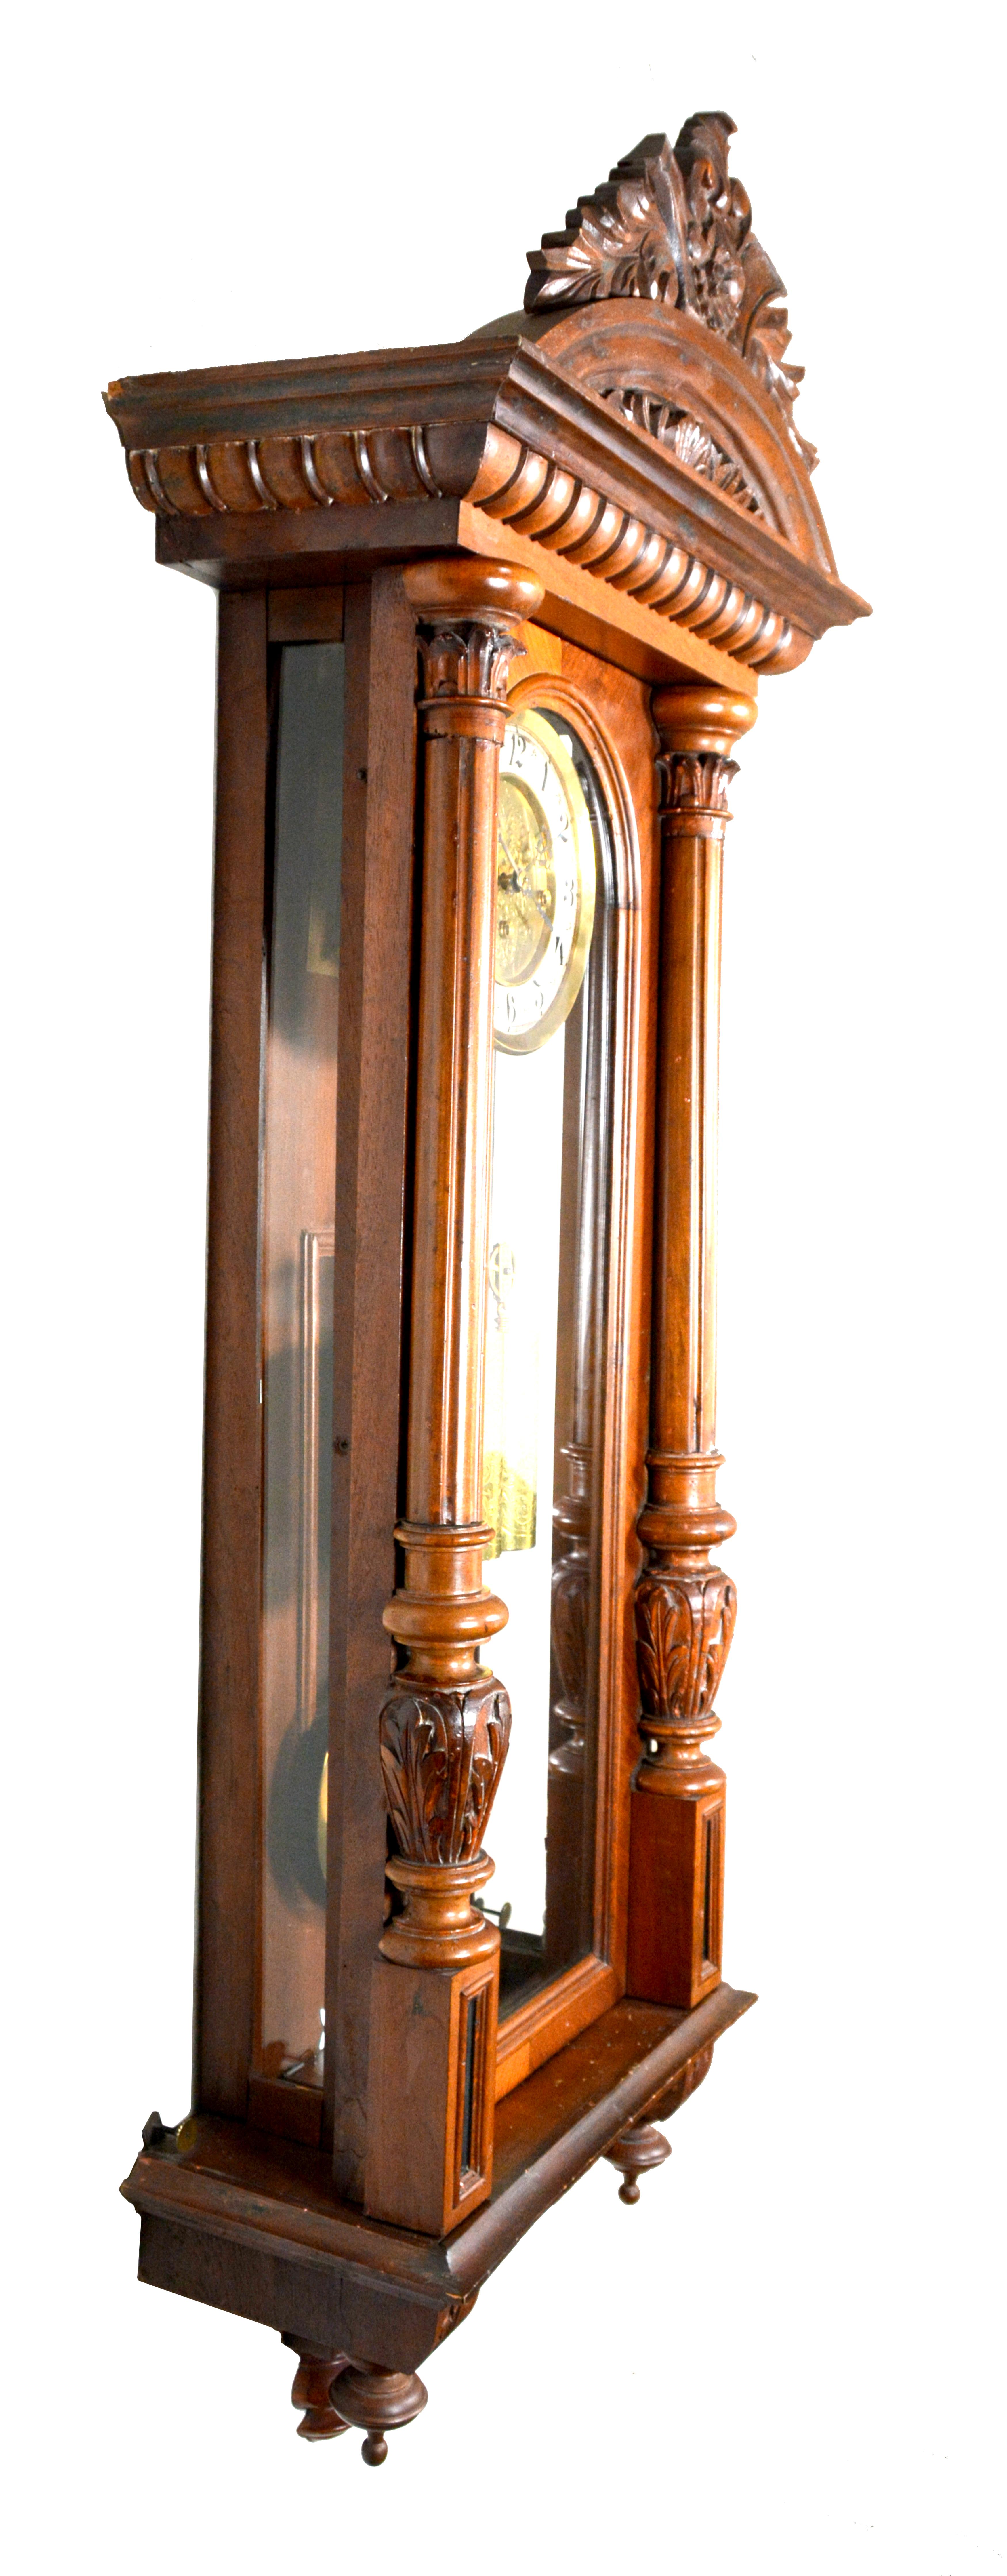 Antike 1890 deutsche Kienzle Grand Sonnerie Wien Regulator Wanduhr

Hier ist eine ausgezeichnete 3 Gewicht angetrieben Regulator Wanduhr. Diese Uhr ist 49-1/2